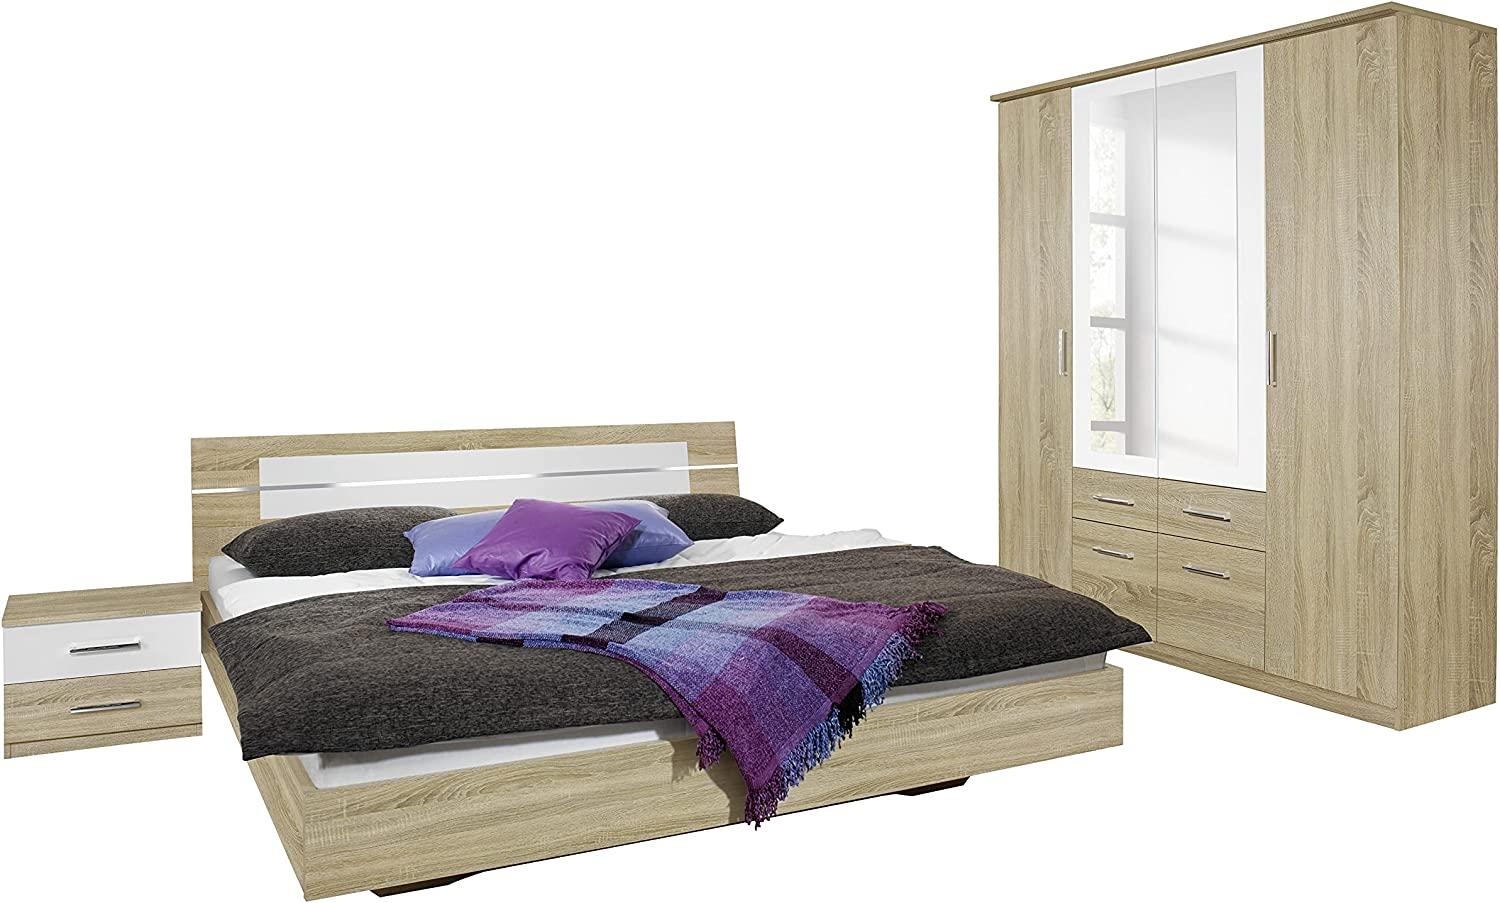 Rauch Möbel Burano Schlafzimmer, Eiche Sonoma / Weiß, bestehend aus Bett mit Liegefläche 180x200 cm inklusive 2 Nachttische und Drehtürenschrank BxHxT 181x212x58 cm Bild 1